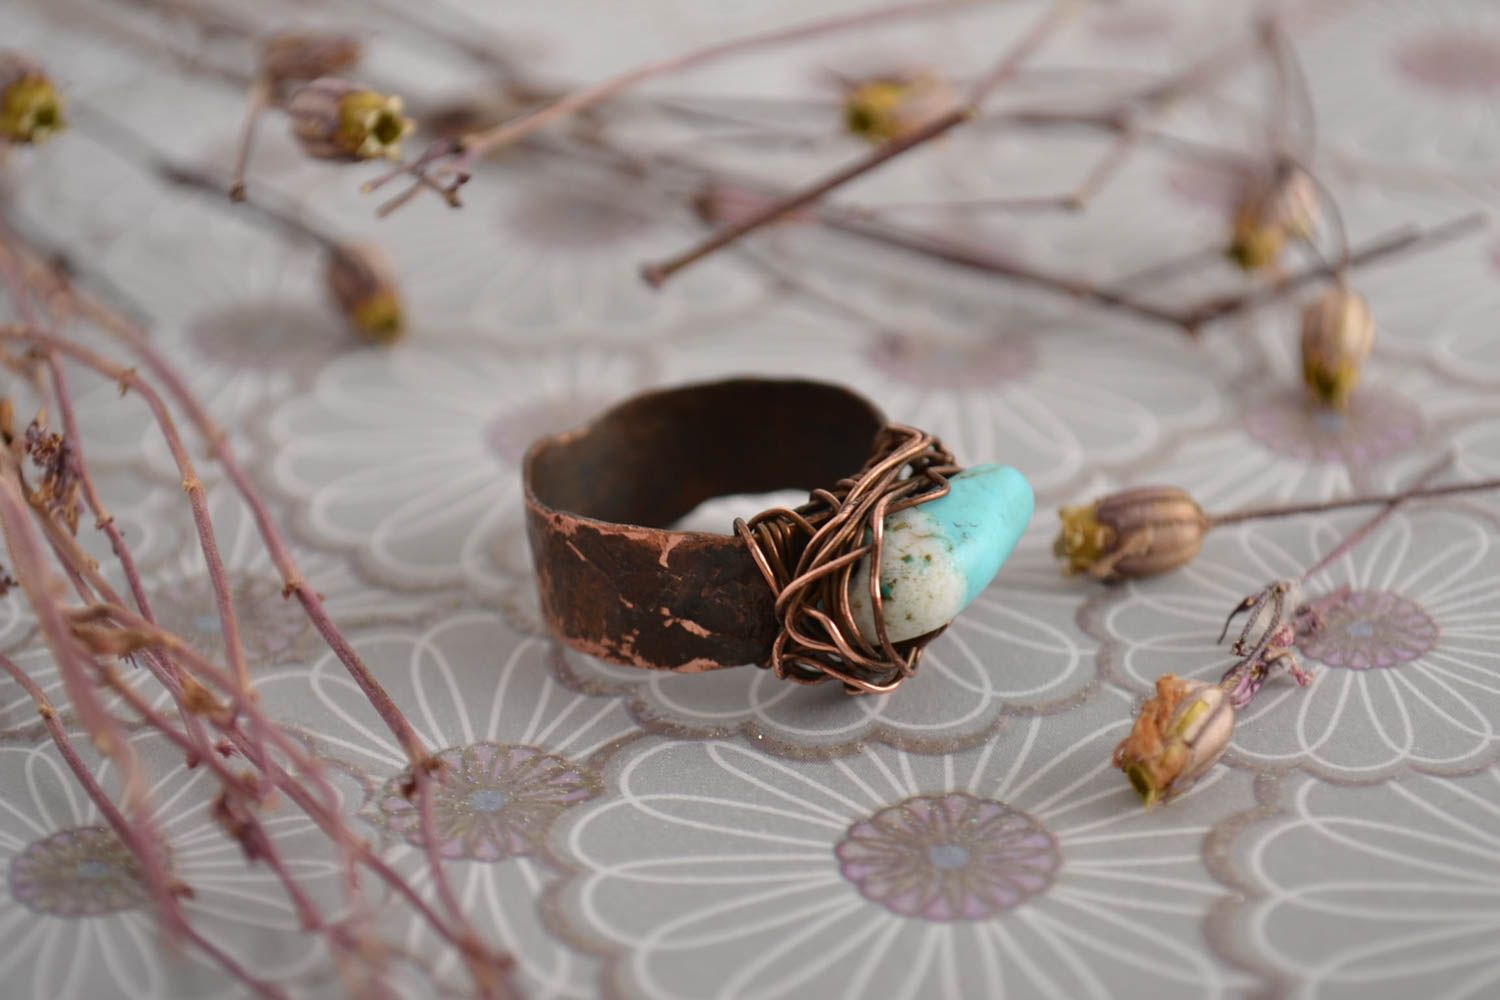 Красивое кольцо хэнд мэйд украшение в технике wire wrap медное кольцо с бирюзой фото 1